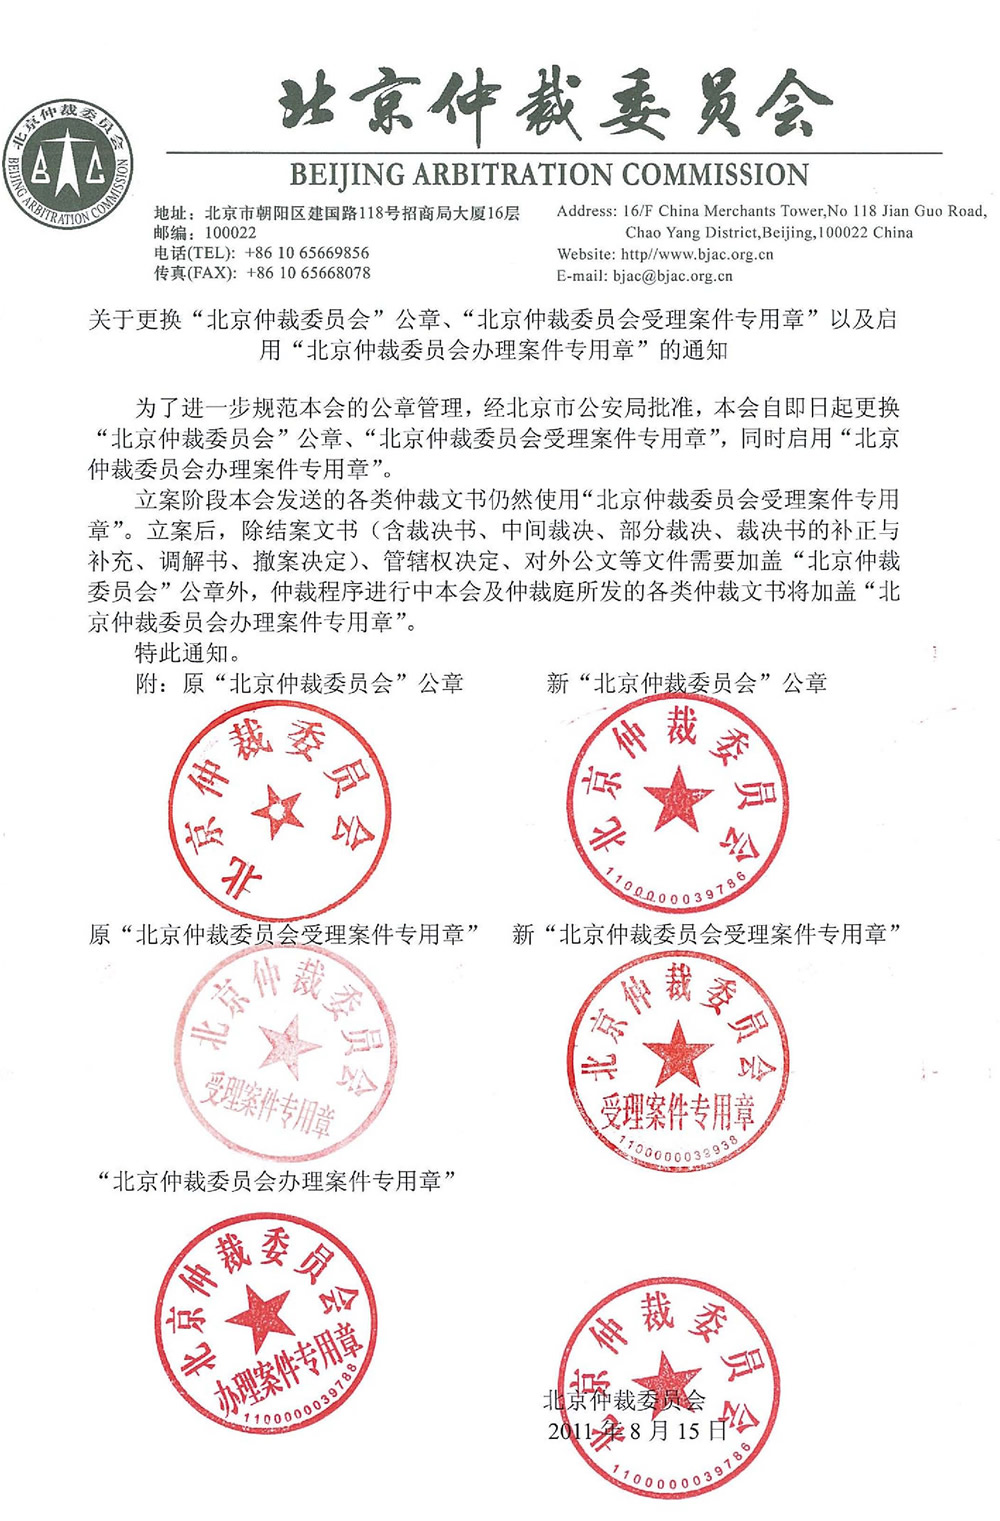 关于更换北京仲裁委员会公章,北京仲裁委员会受理案件专用章以及